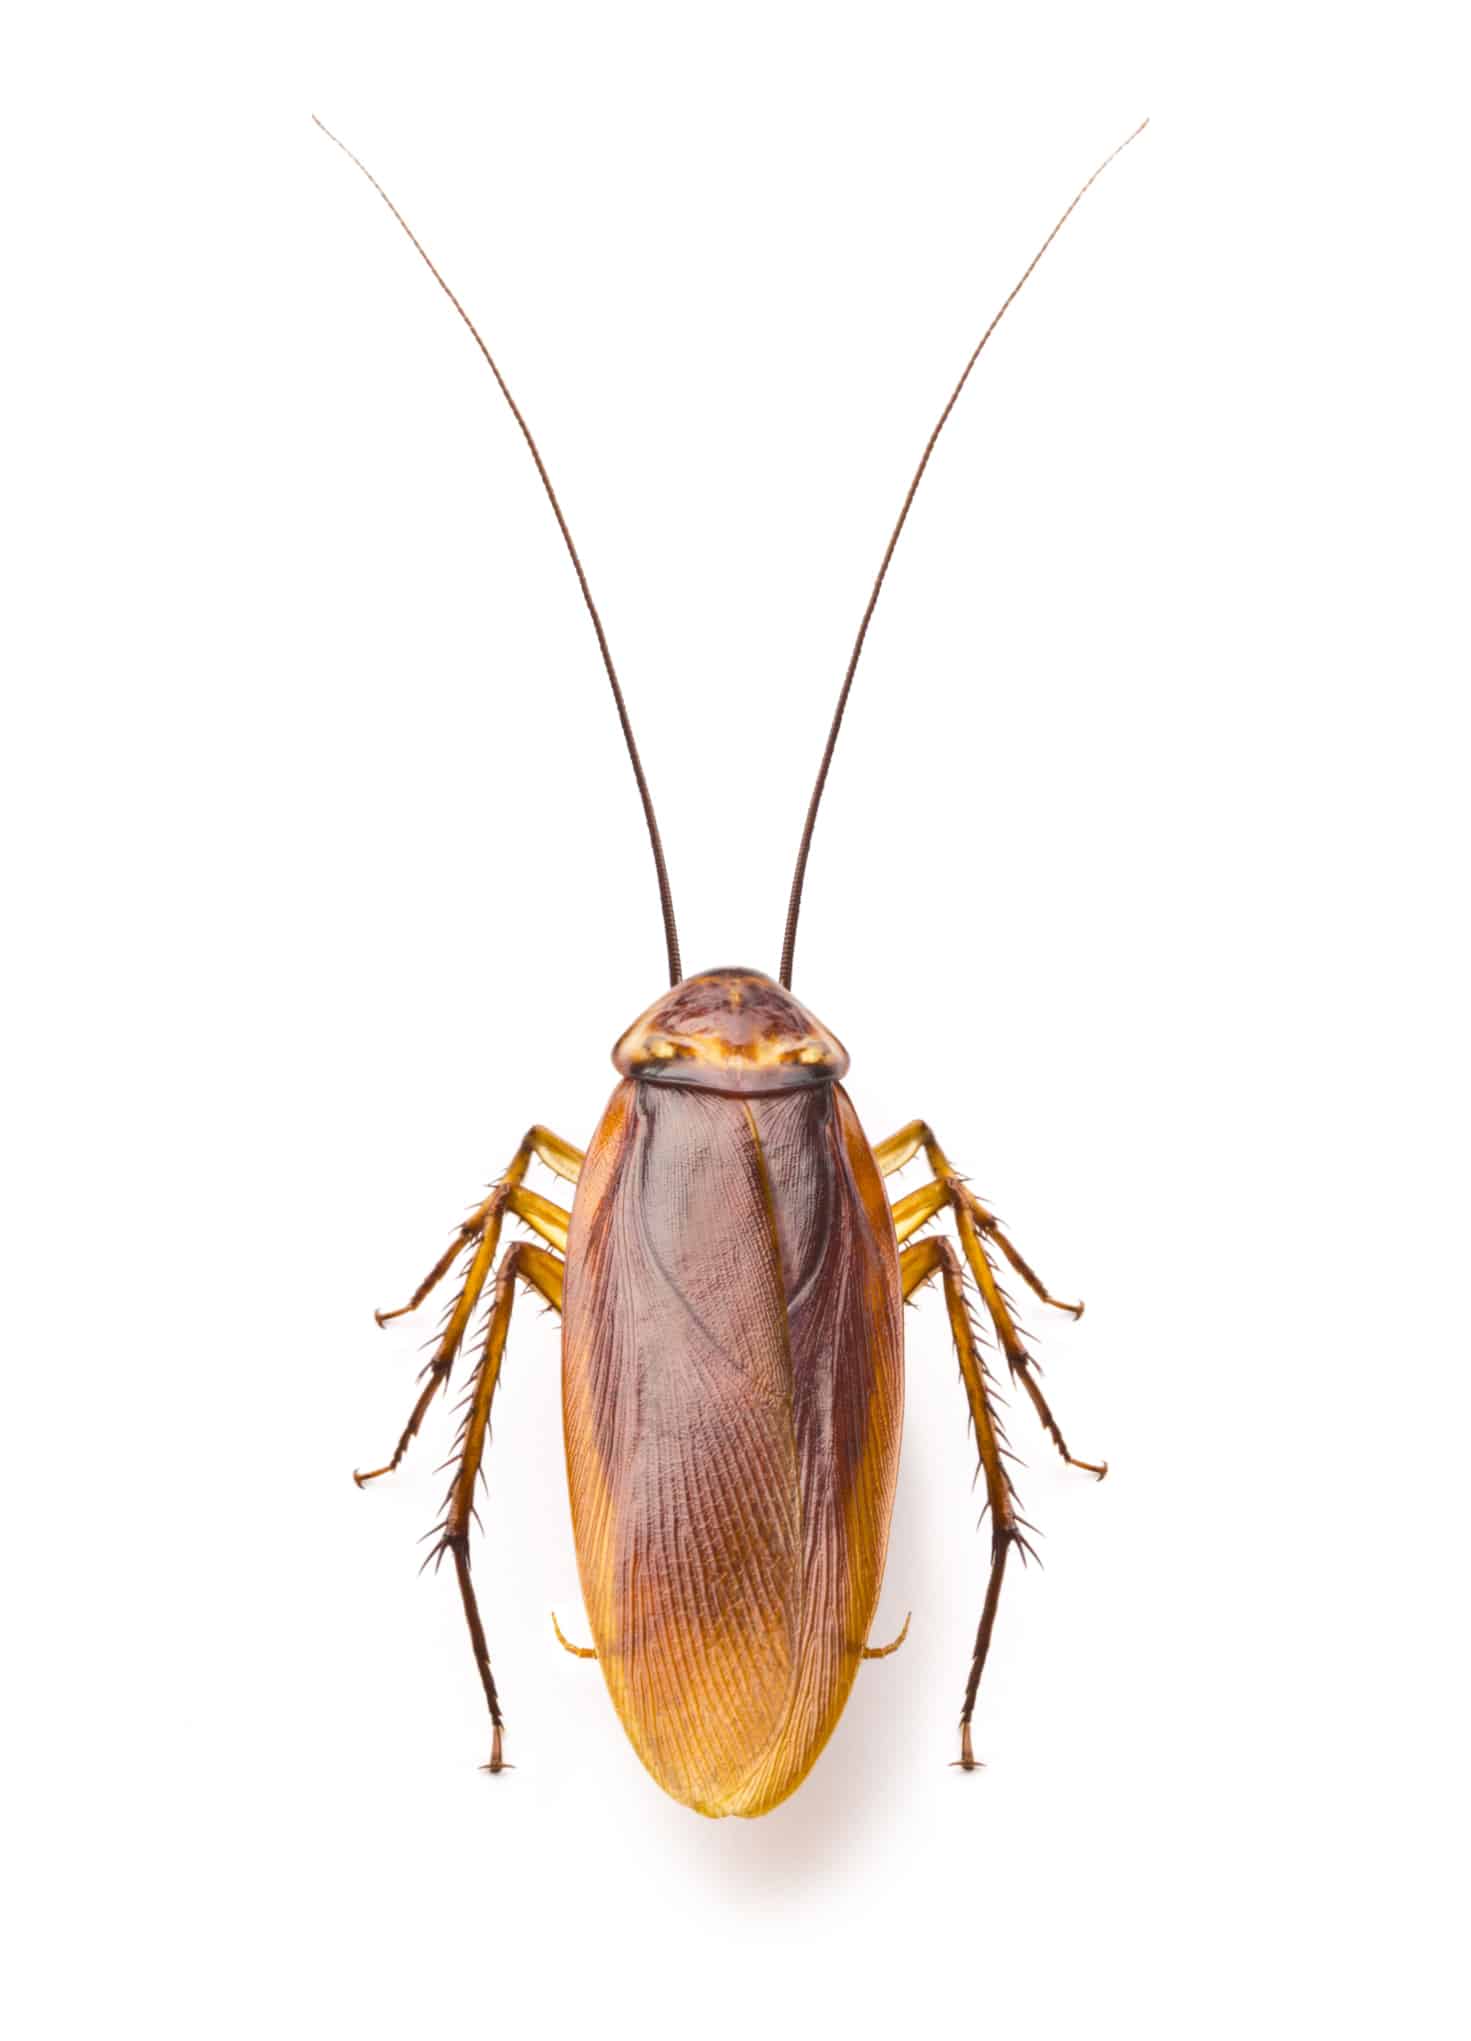 Foto di uno scarafaggio